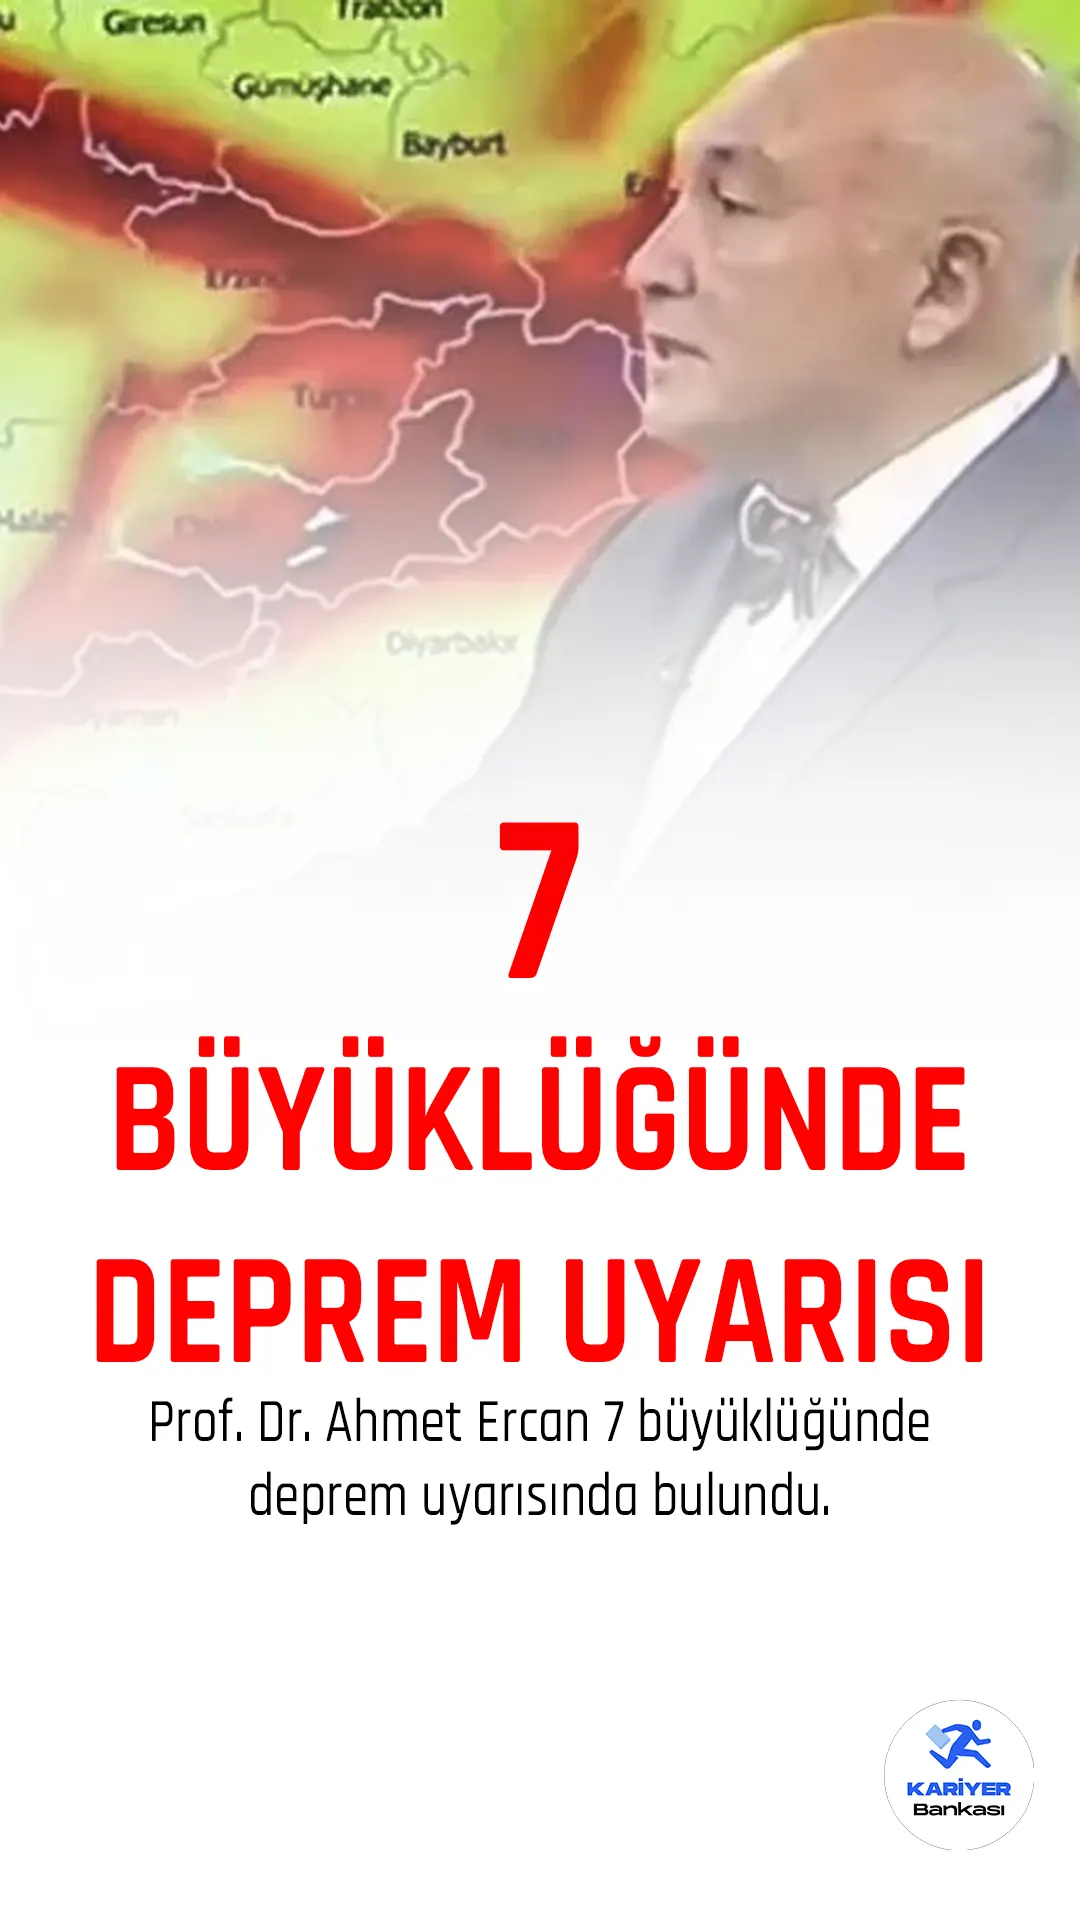 Son dakika... Adana'daki depremin ardından Prof. Dr. Ahmet Ercan'dan Adana ve Mersin için deprem uyarıları art arda geldi.